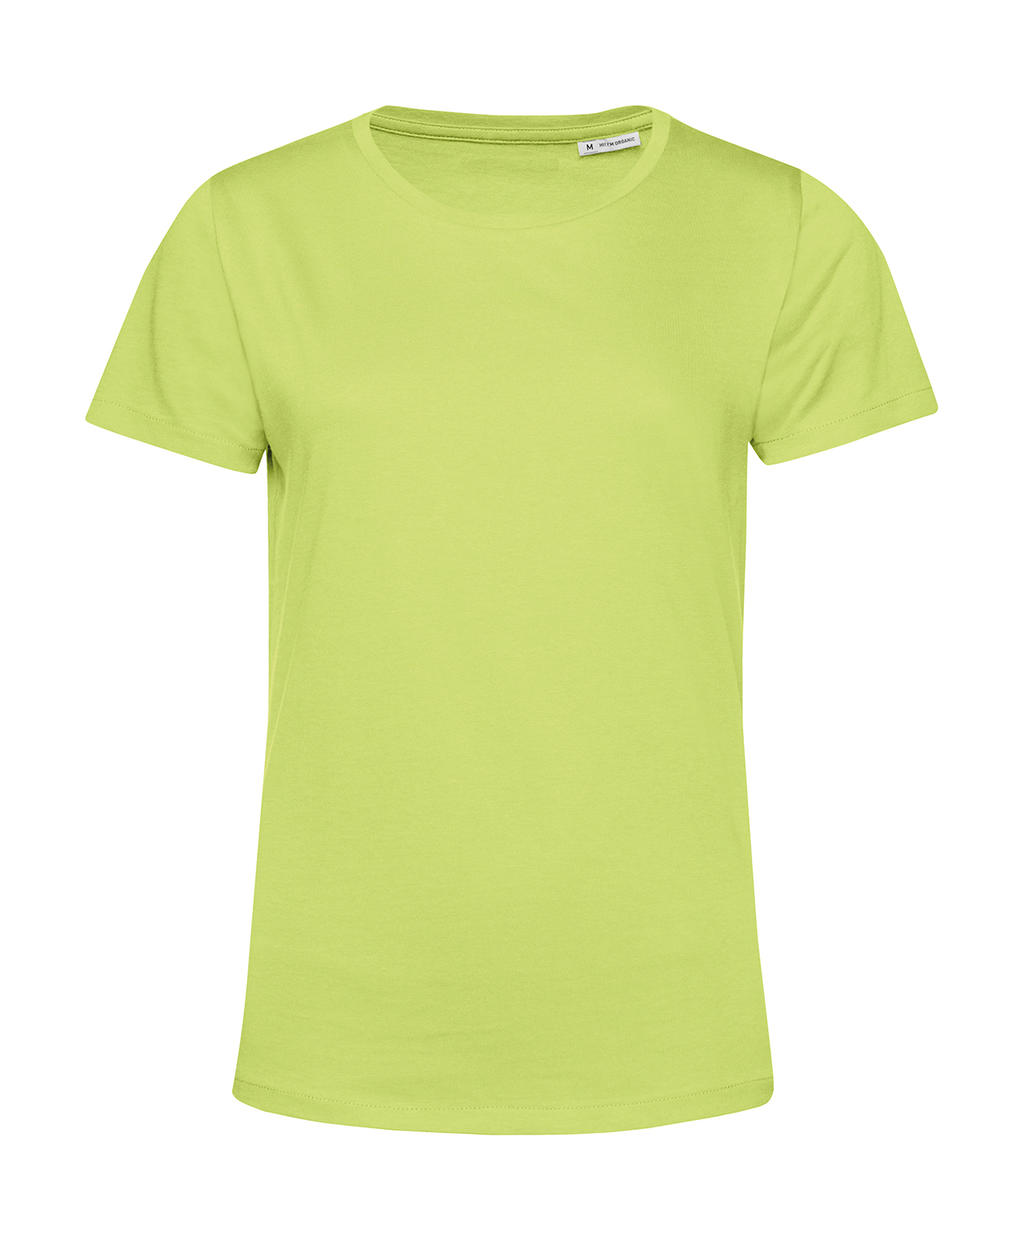 Tričko dámské BC Organic Inspire E150 - světle zelené, L